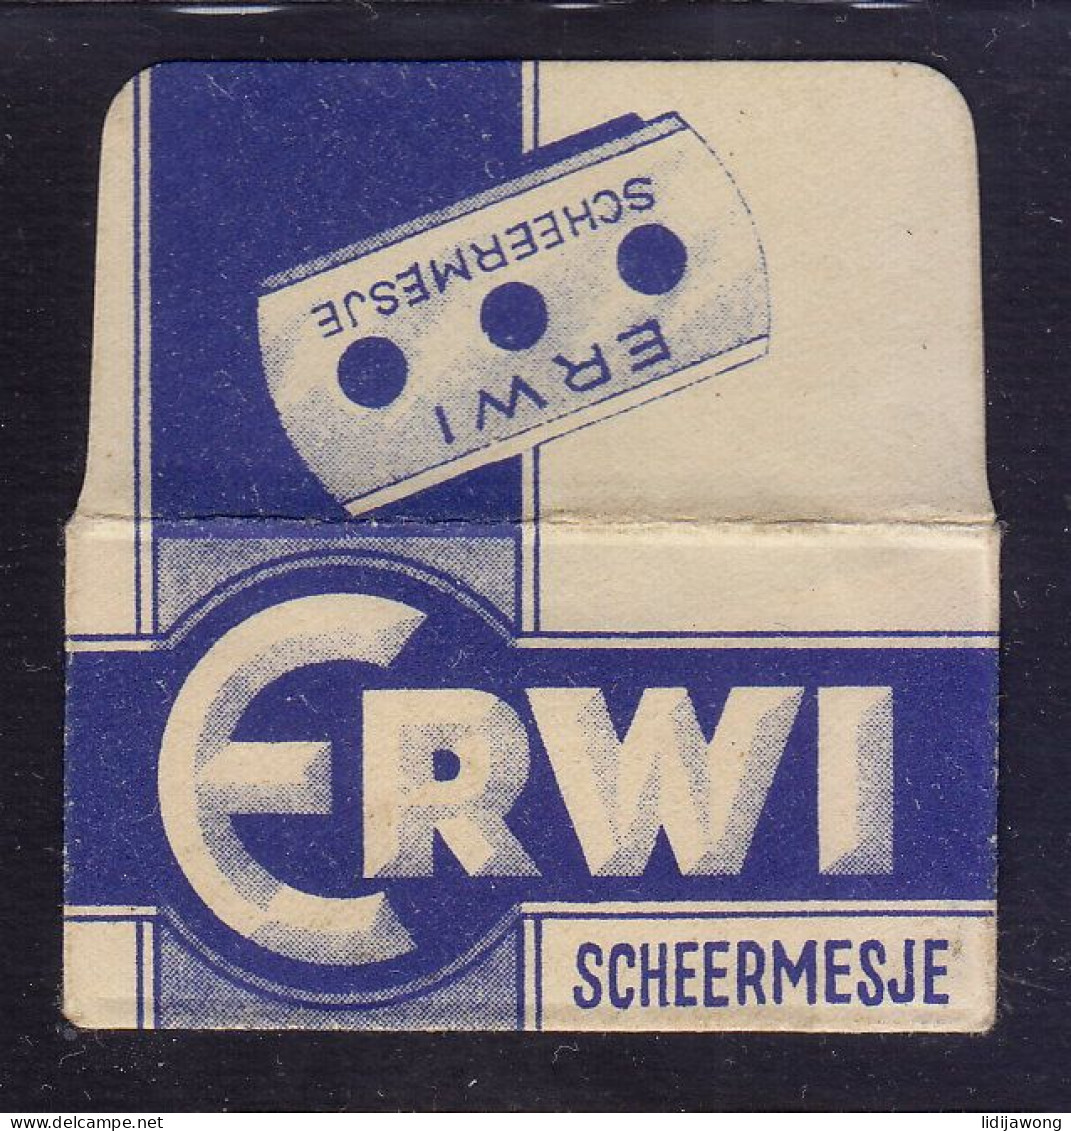 "ERWI" Razor Blade Old Vintage WRAPPER (see Sales Conditions) - Lames De Rasoir